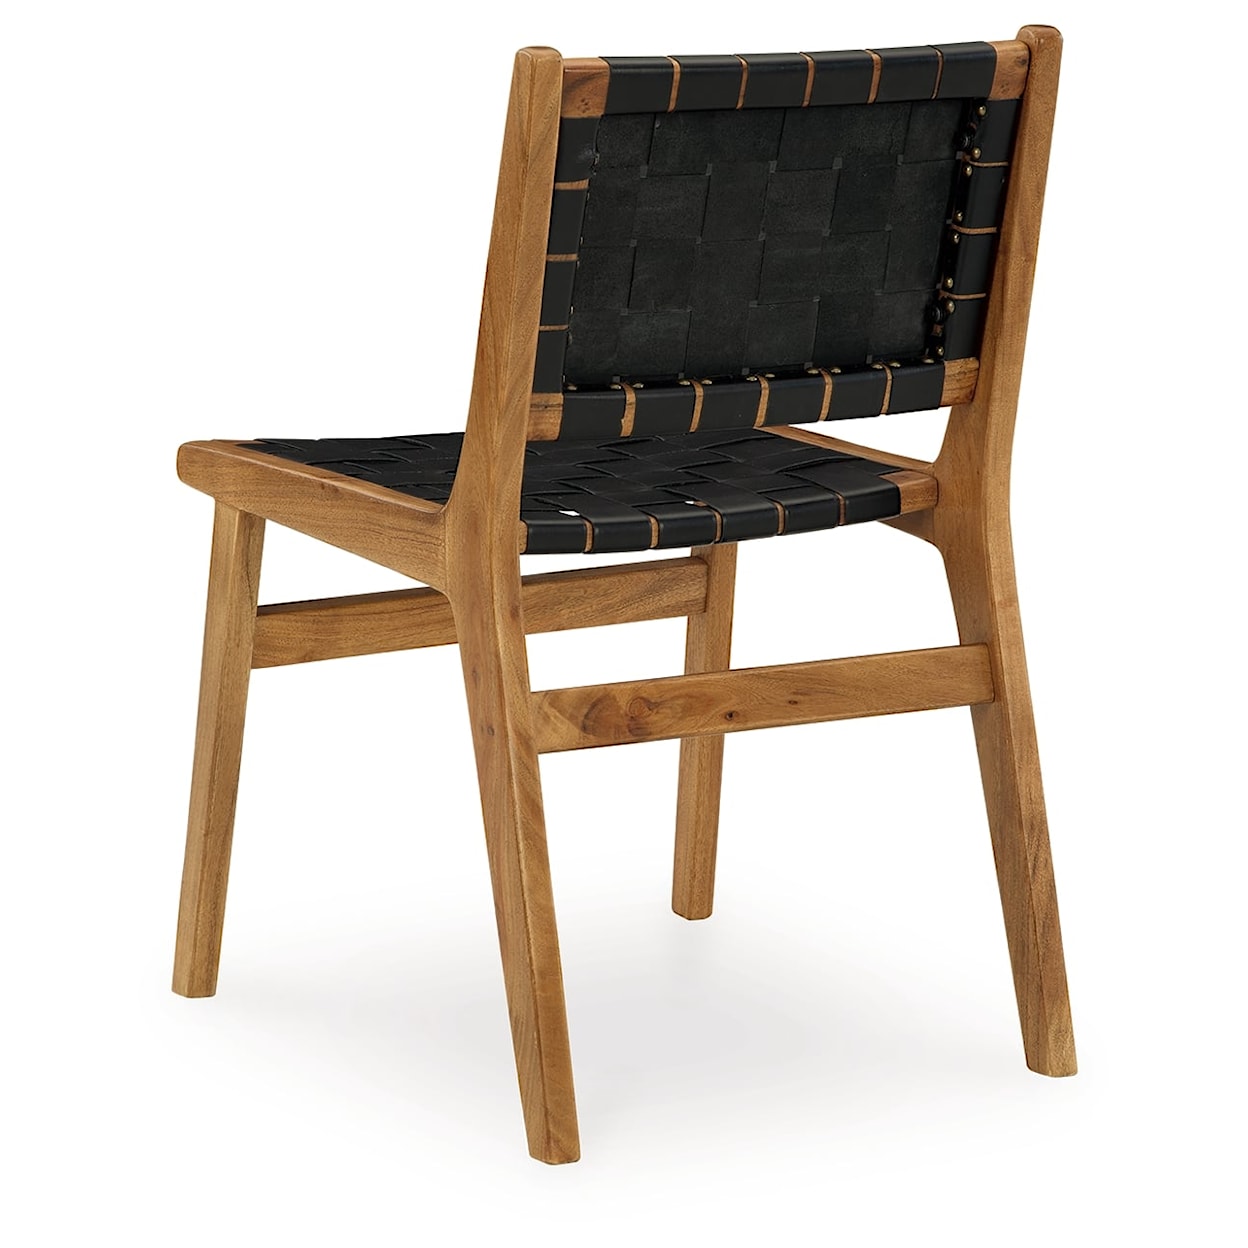 Signature Design Fortmaine Dining Chair